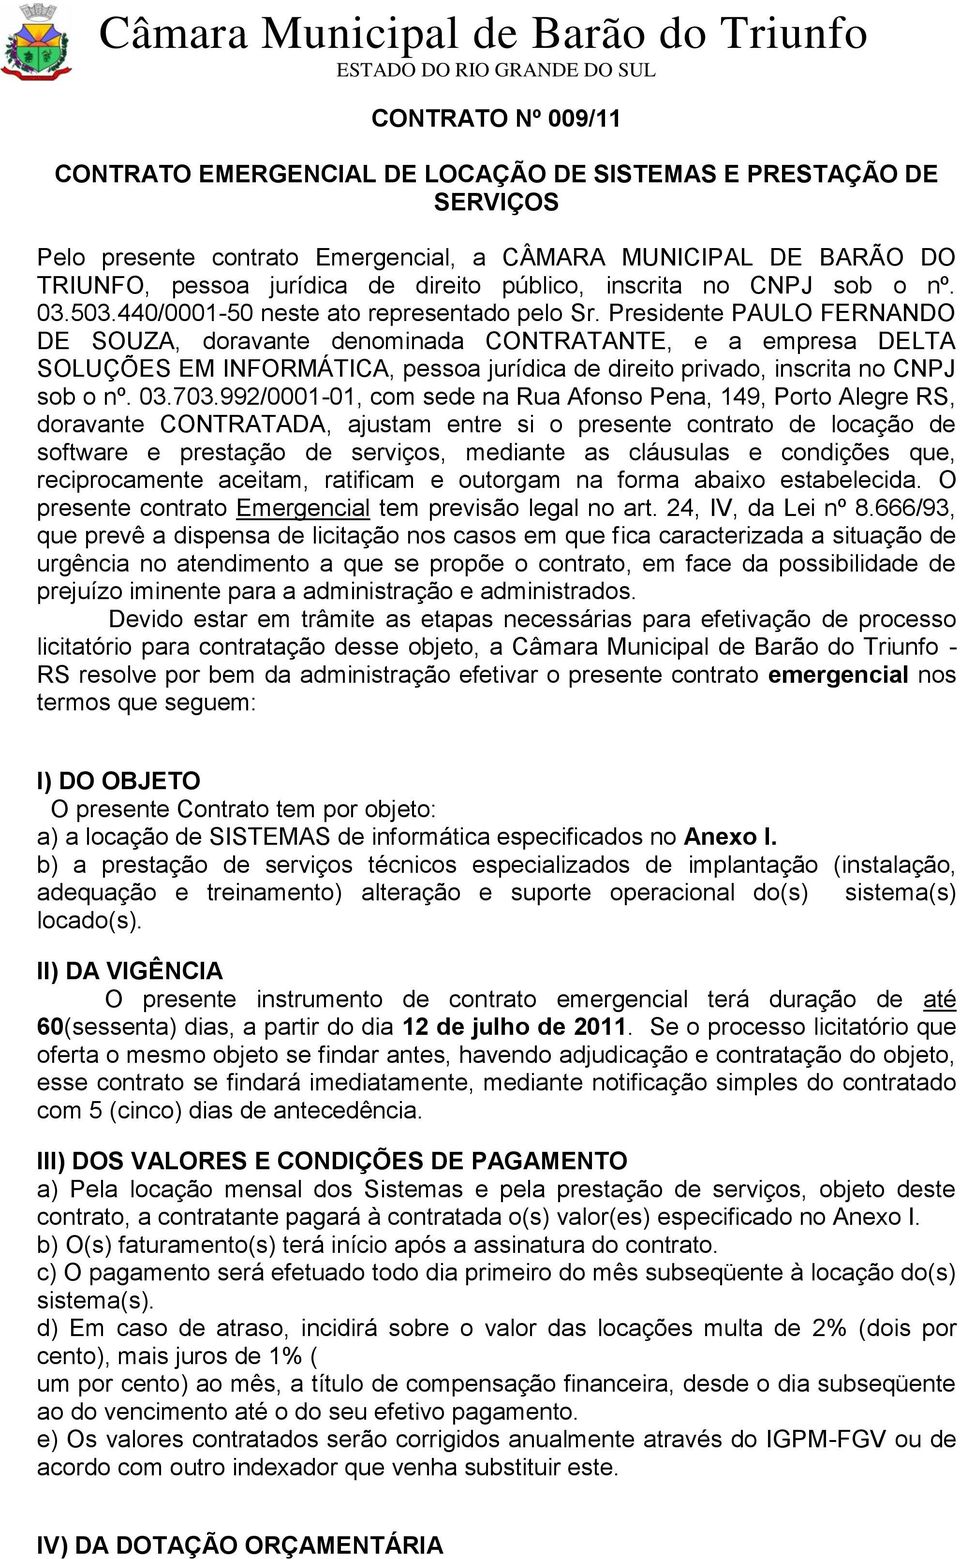 Presidente PAULO FERNANDO DE SOUZA, doravante denominada CONTRATANTE, e a empresa DELTA SOLUÇÕES EM INFORMÁTICA, pessoa jurídica de direito privado, inscrita no CNPJ sob o nº. 03.703.